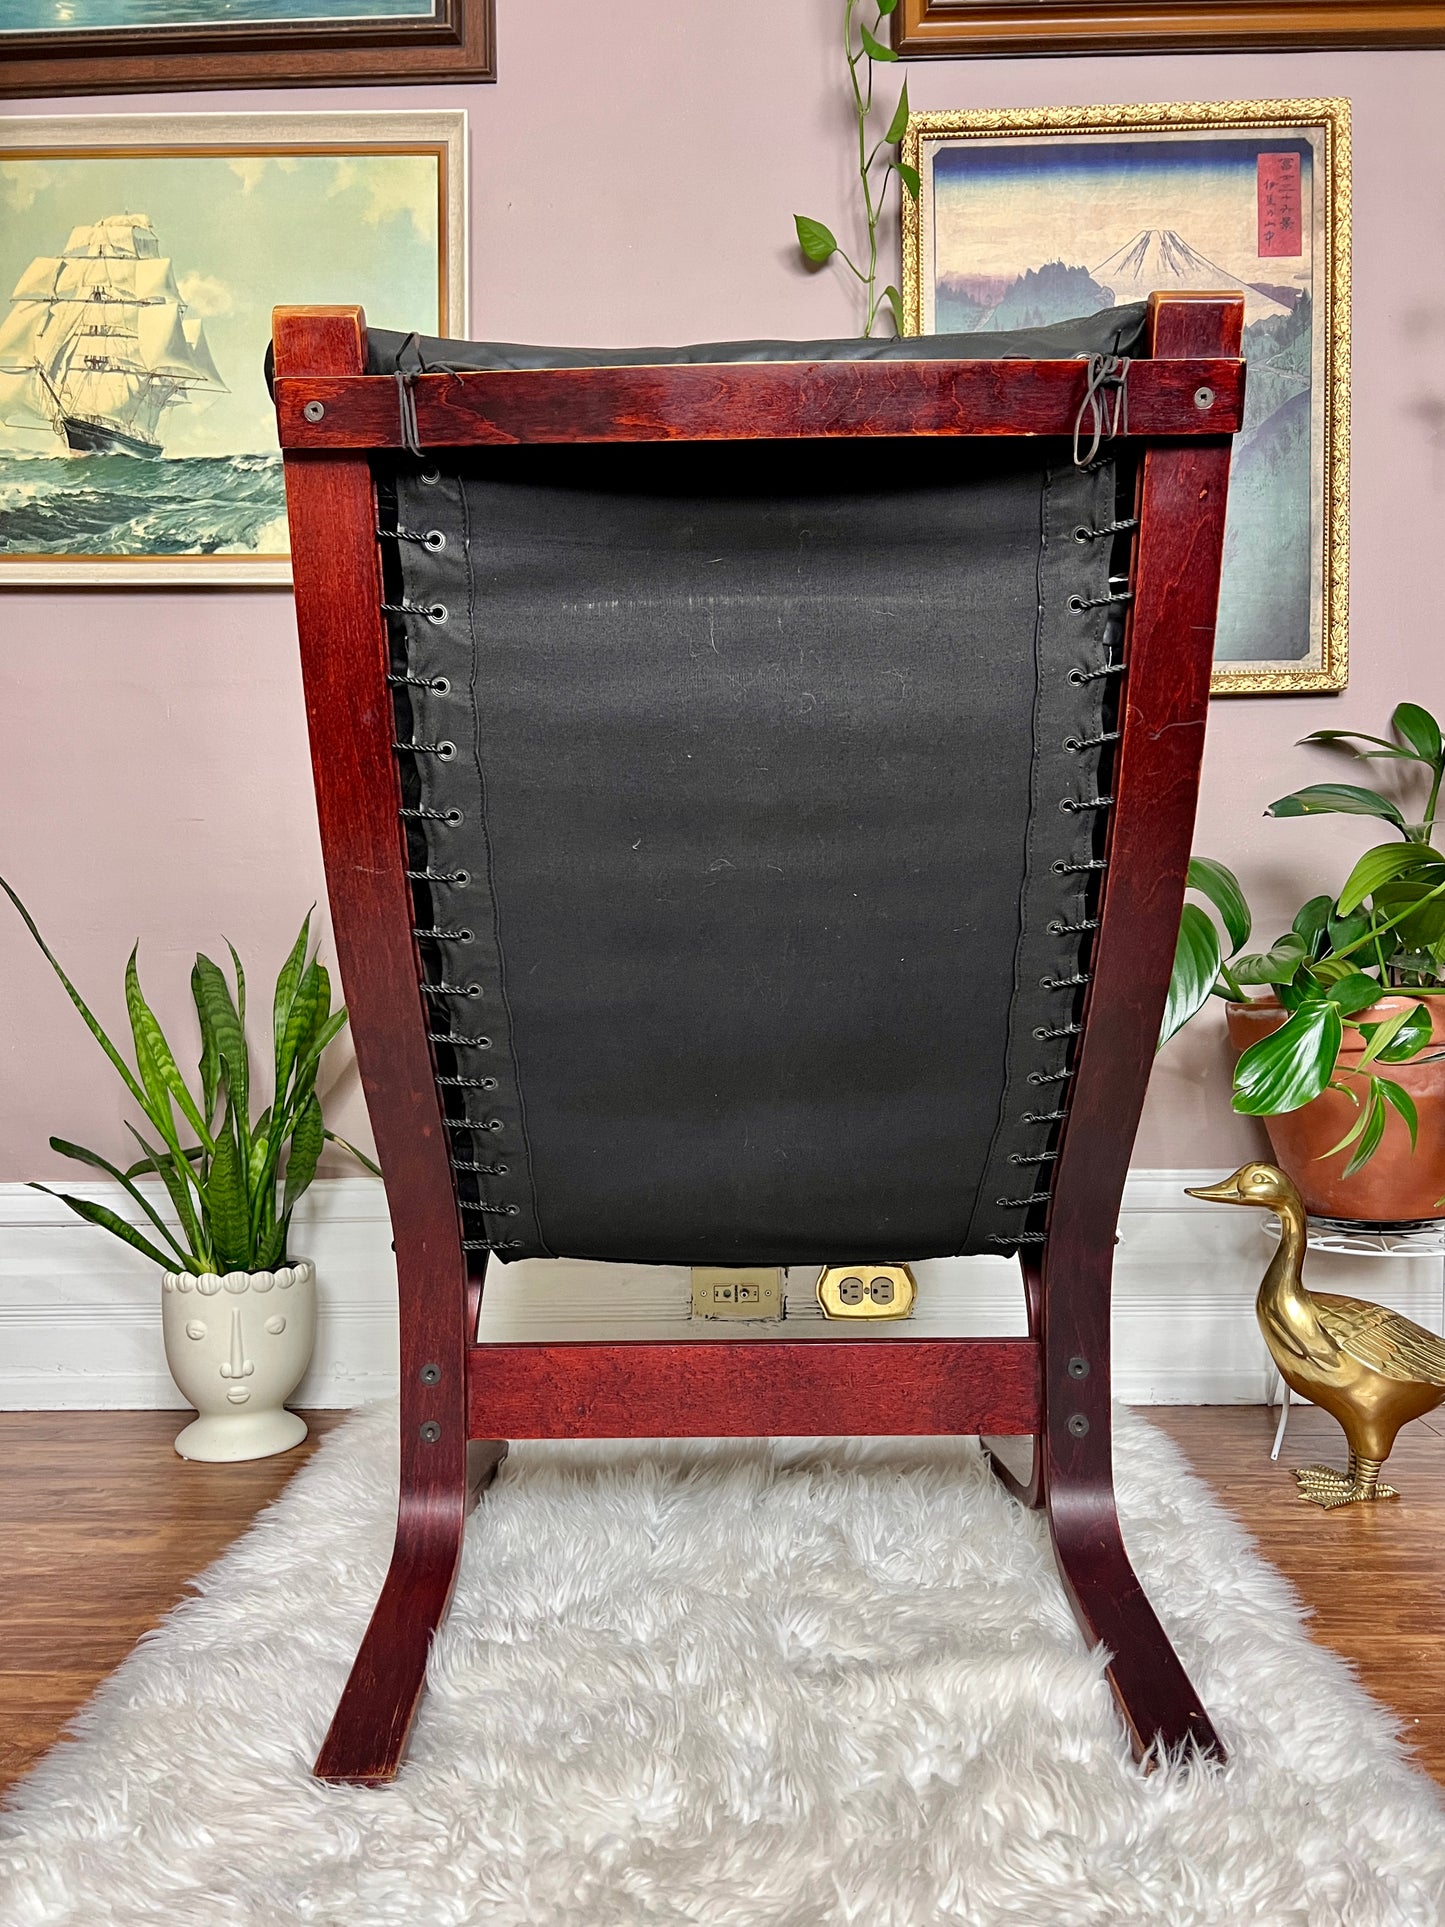 The Black Siesta Chair & Ottoman